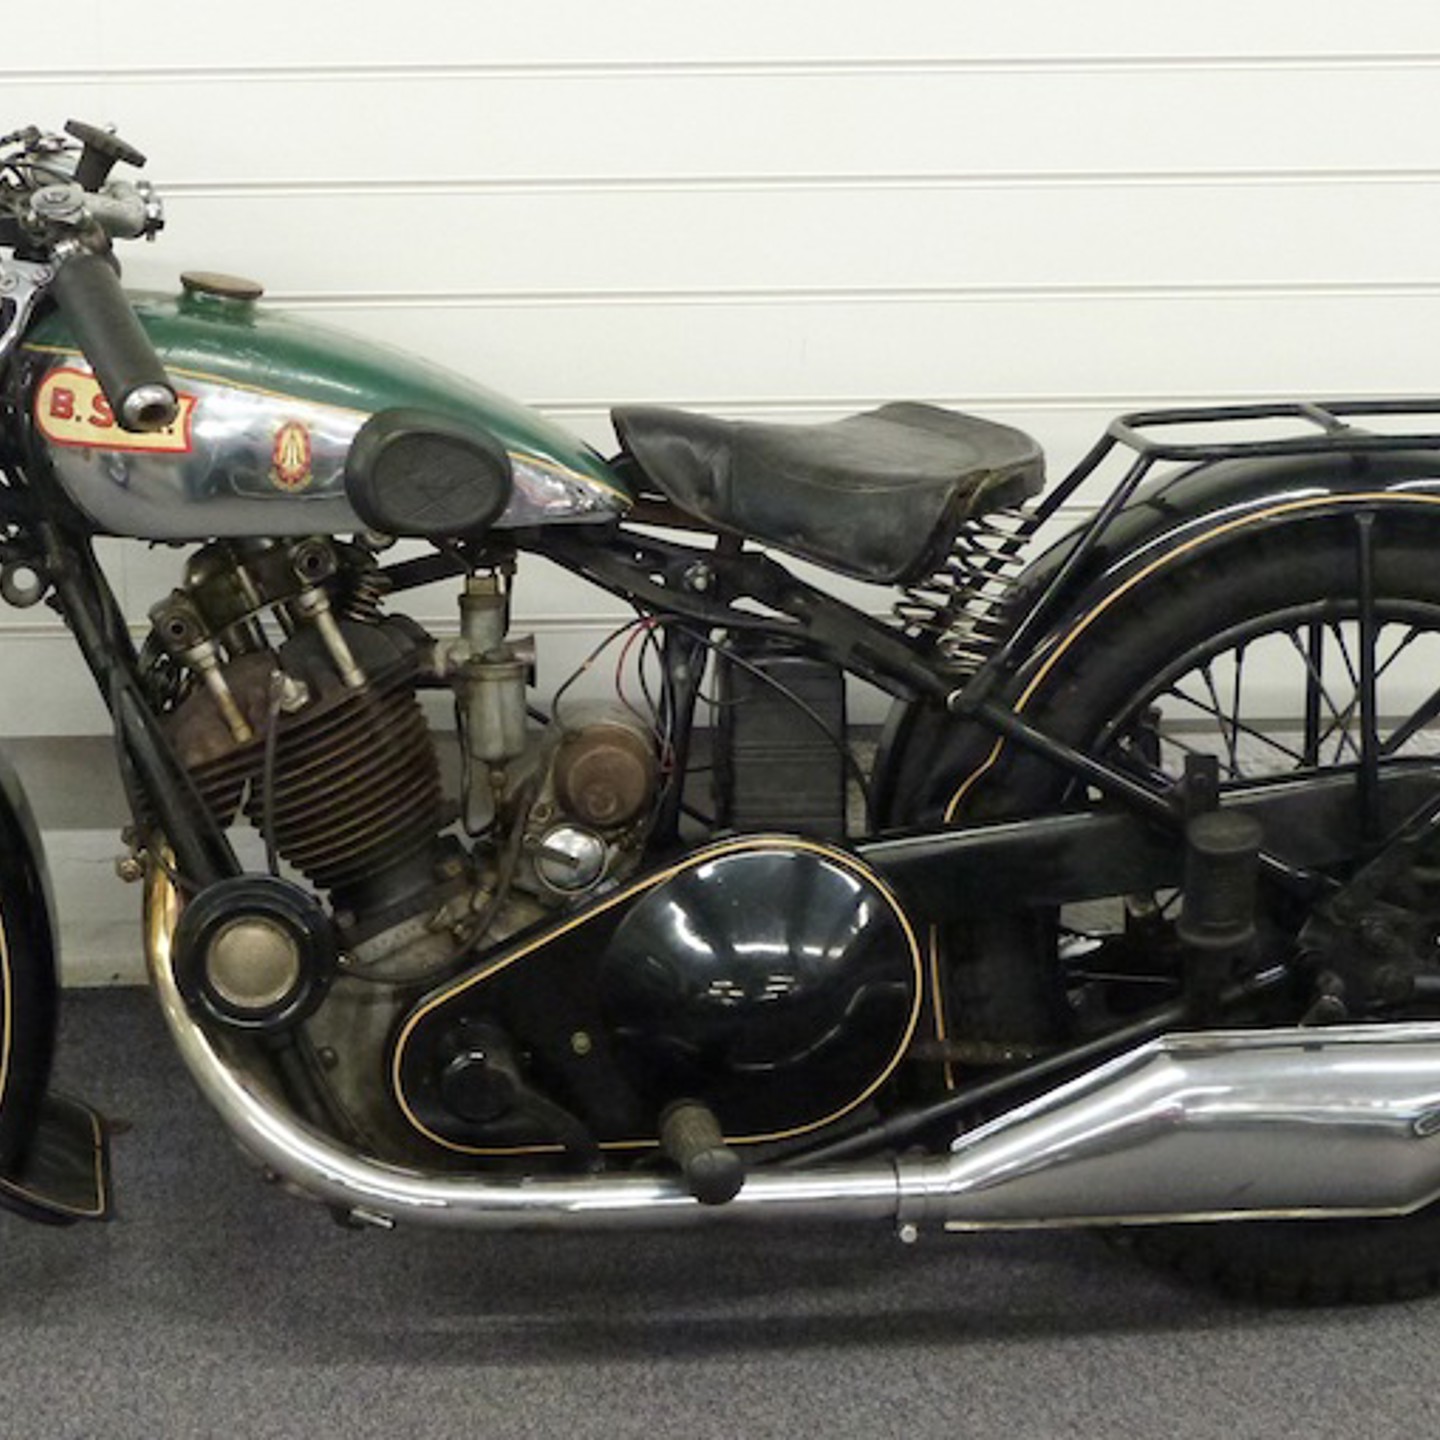 Motoring & Transport 1929 BSA 500Cc OHV Sloper S30 13 Motorcycle DF 8631 Sold For £6500